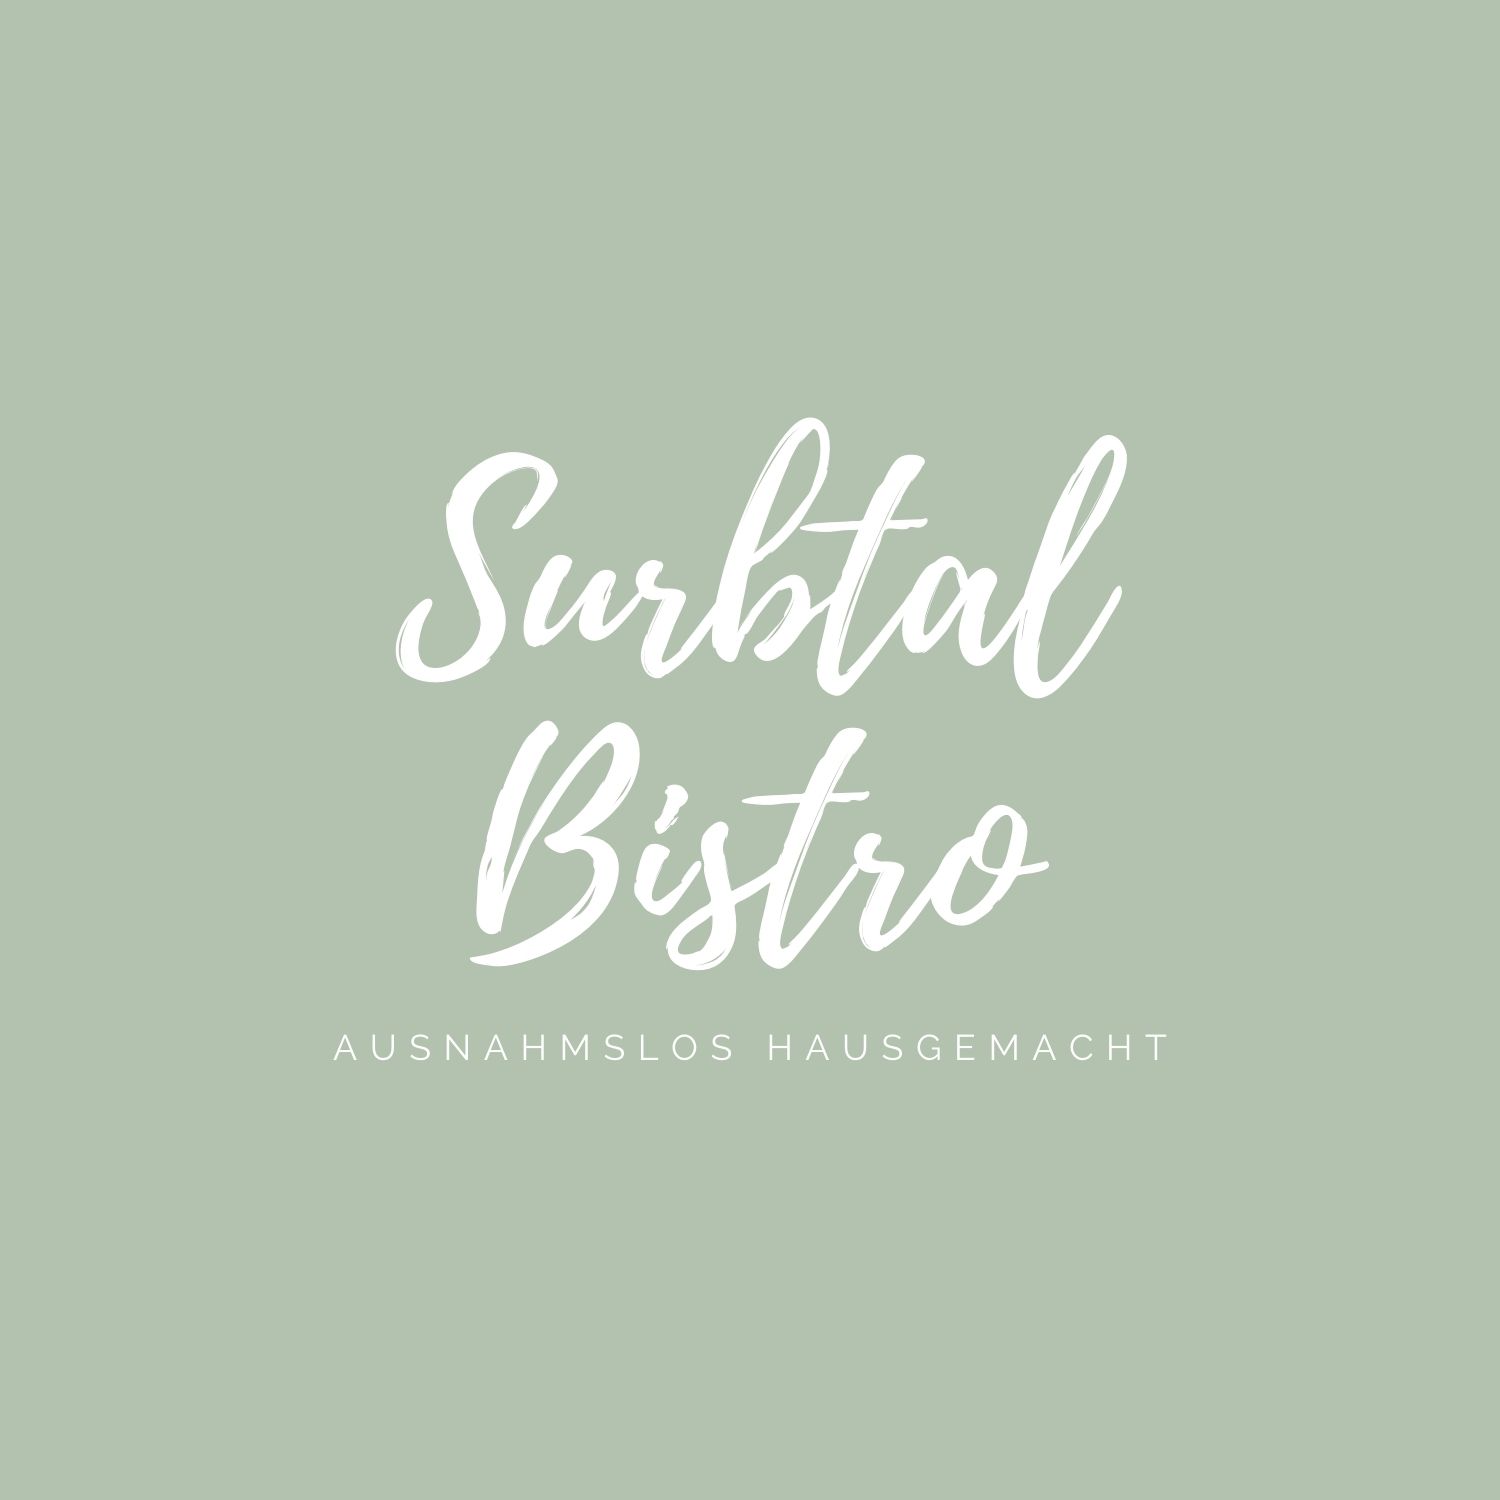 surbtal bistro logo endingen